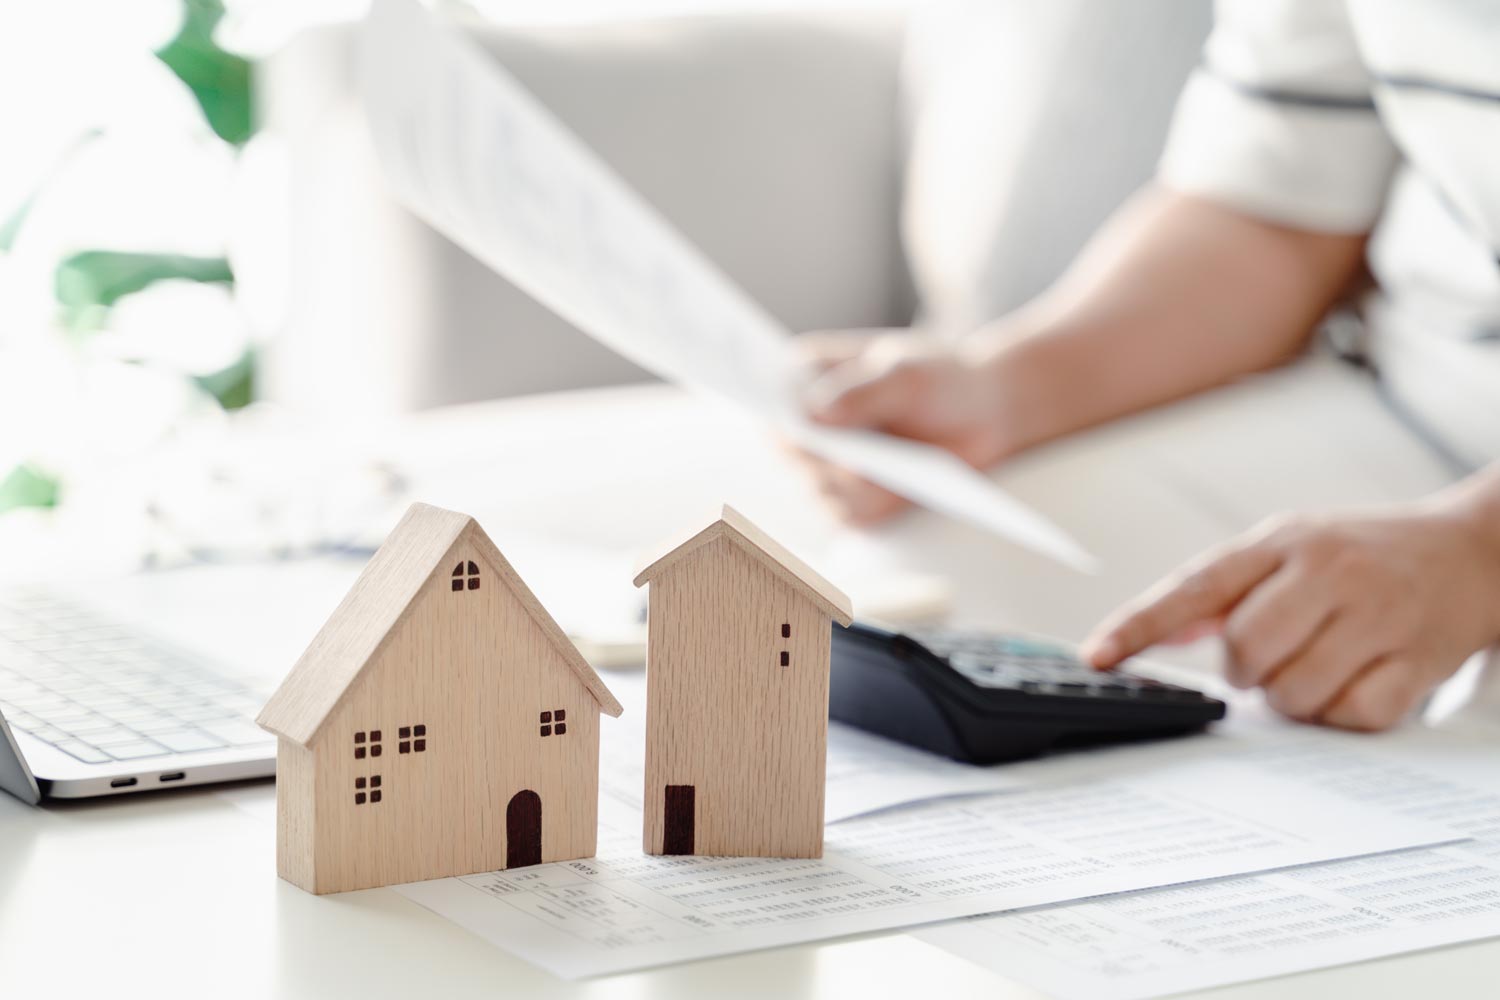 Immobilie finanzieren – Tipps vom Profi und wichtige Förderungen im Überblick